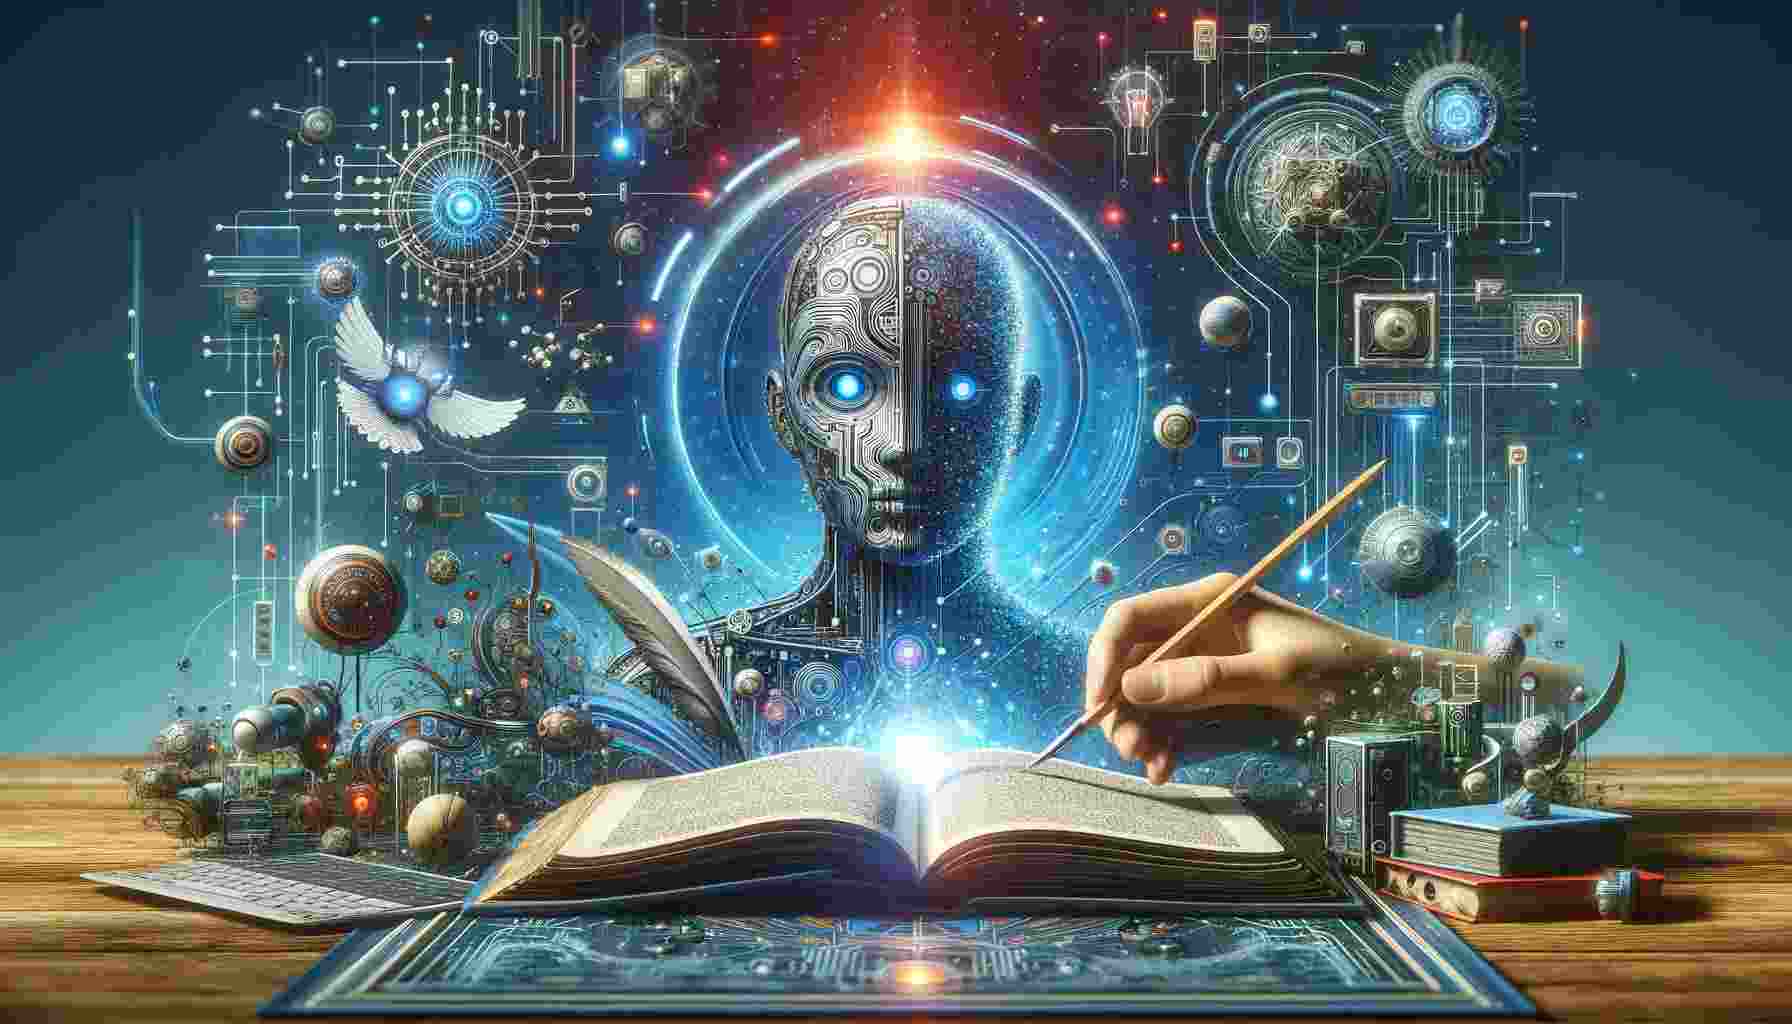  Elementos Essenciais da Narrativa de Ficção Científica Impulsionada pela Inteligência Artificial 